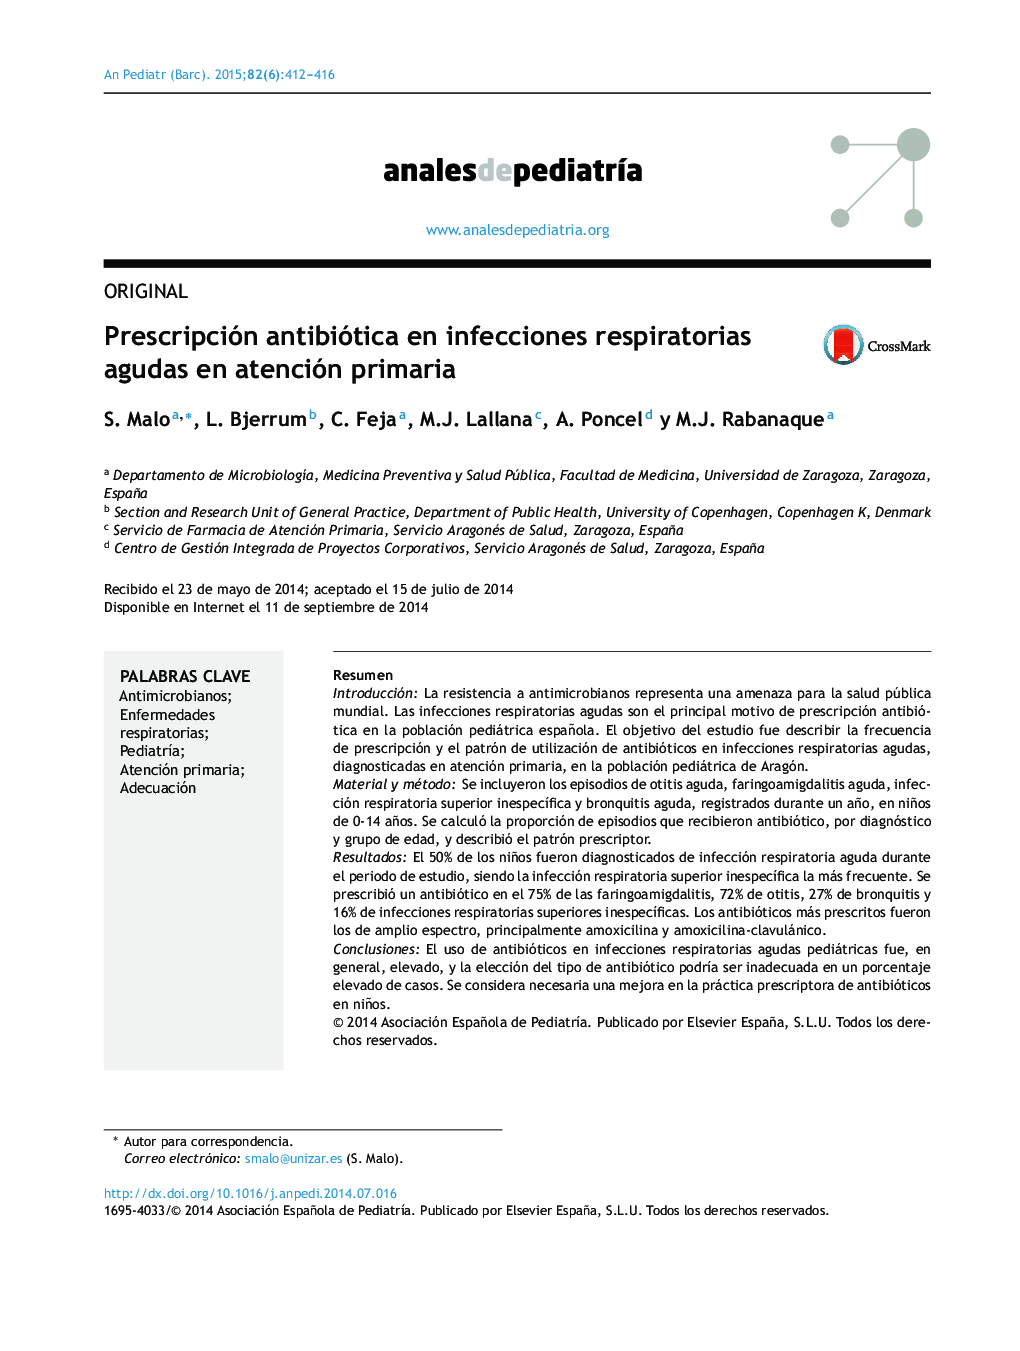 تجویز آنتی بیوتیک در عفونت های حاد تنفسی در مراقبت های اولیه 